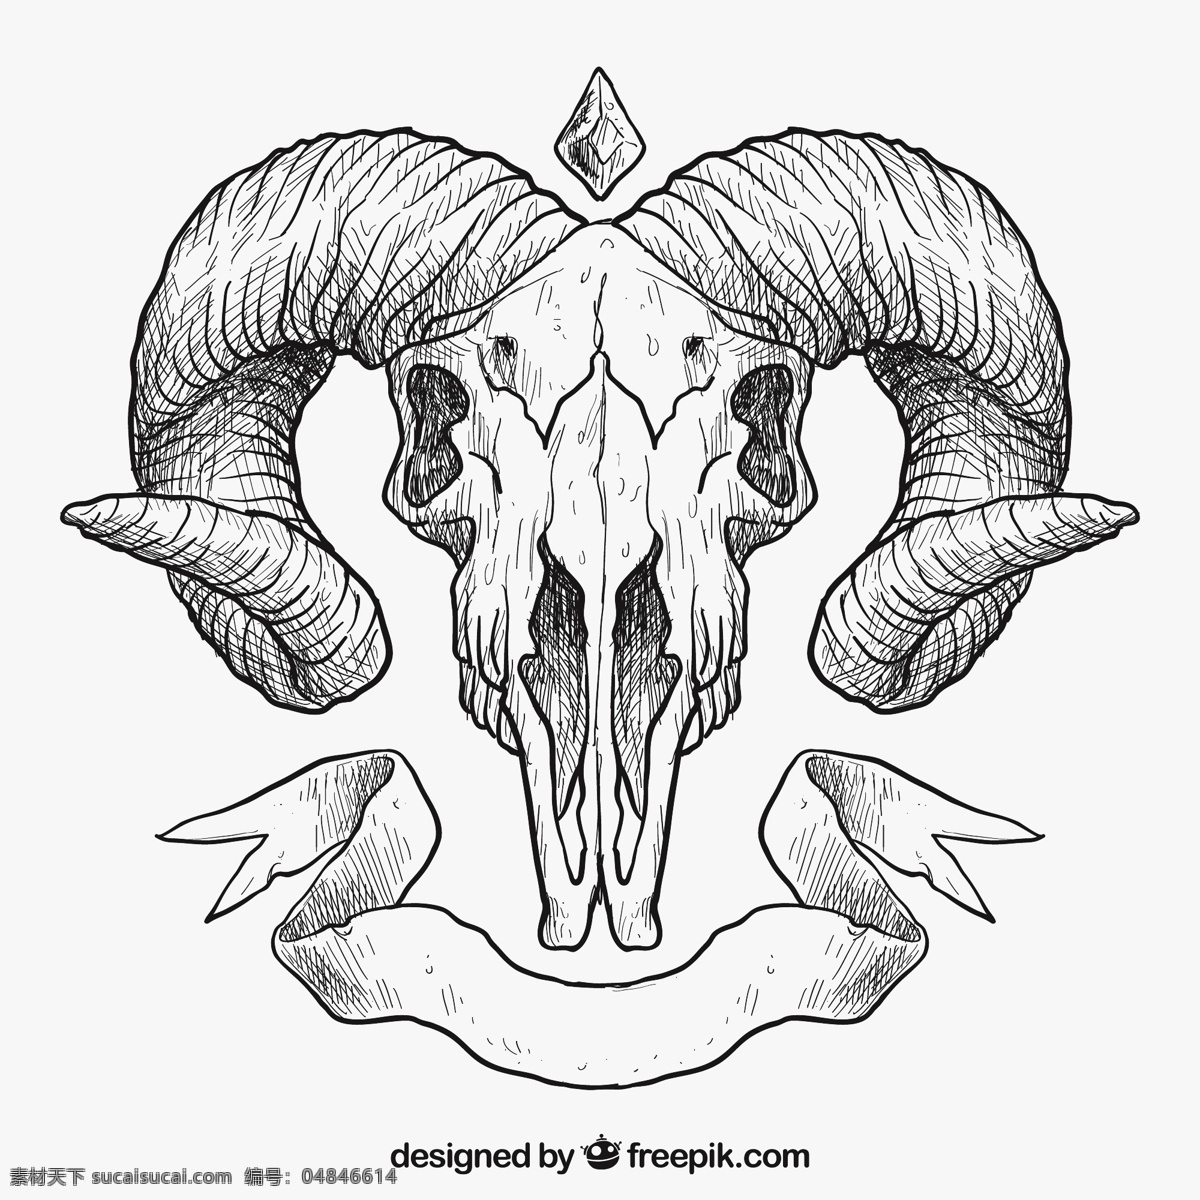 手绘动物头骨 手 动物 手画 头骨 绘画 头部 插图 山羊 手绘 骨骼 草图